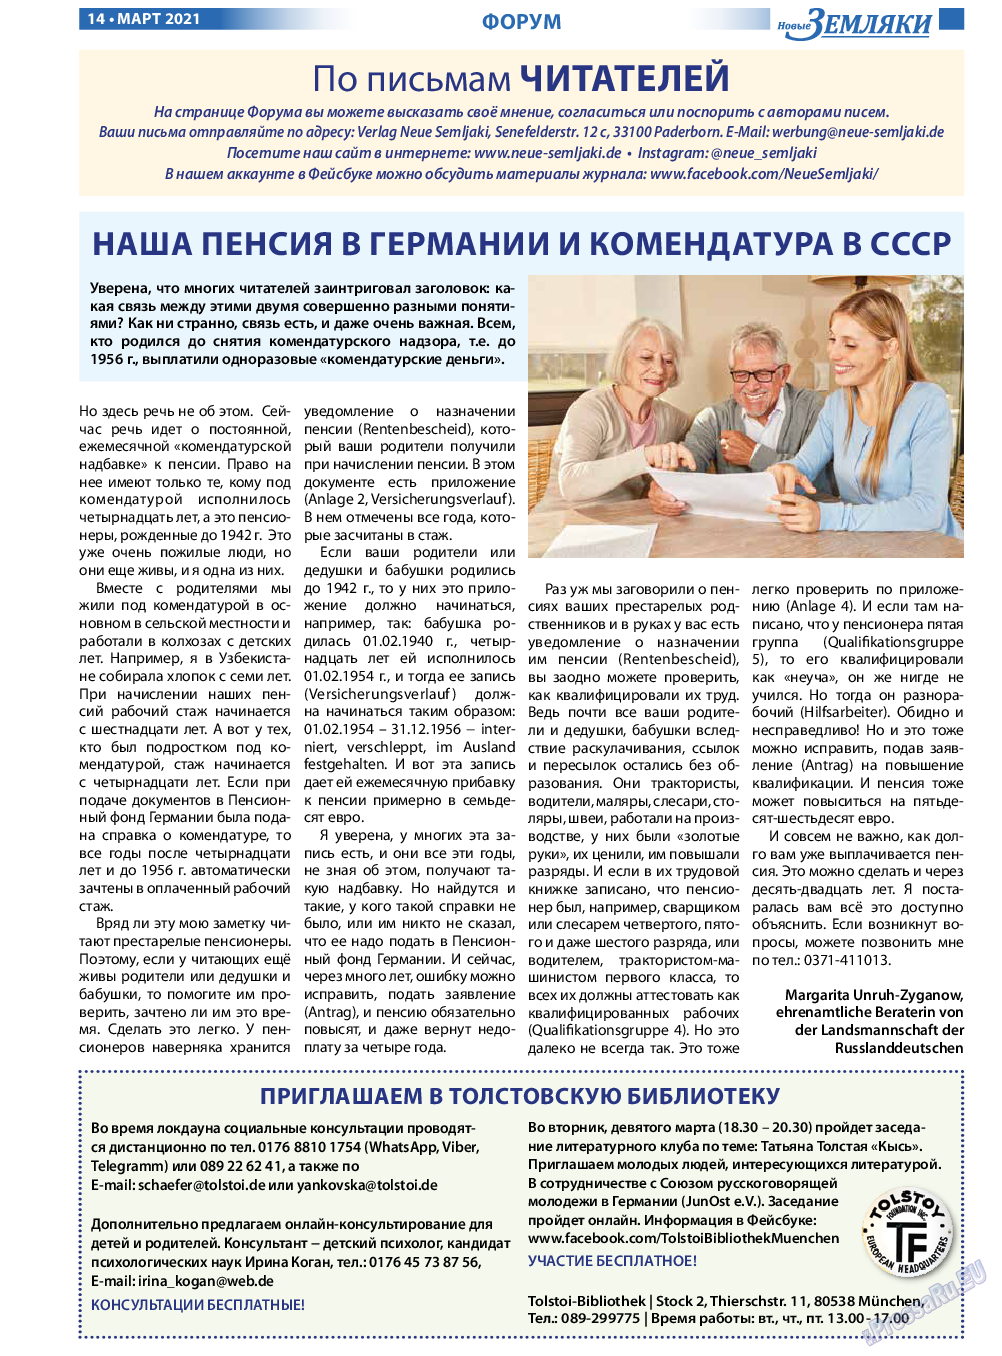 Новые Земляки, газета. 2021 №3 стр.14